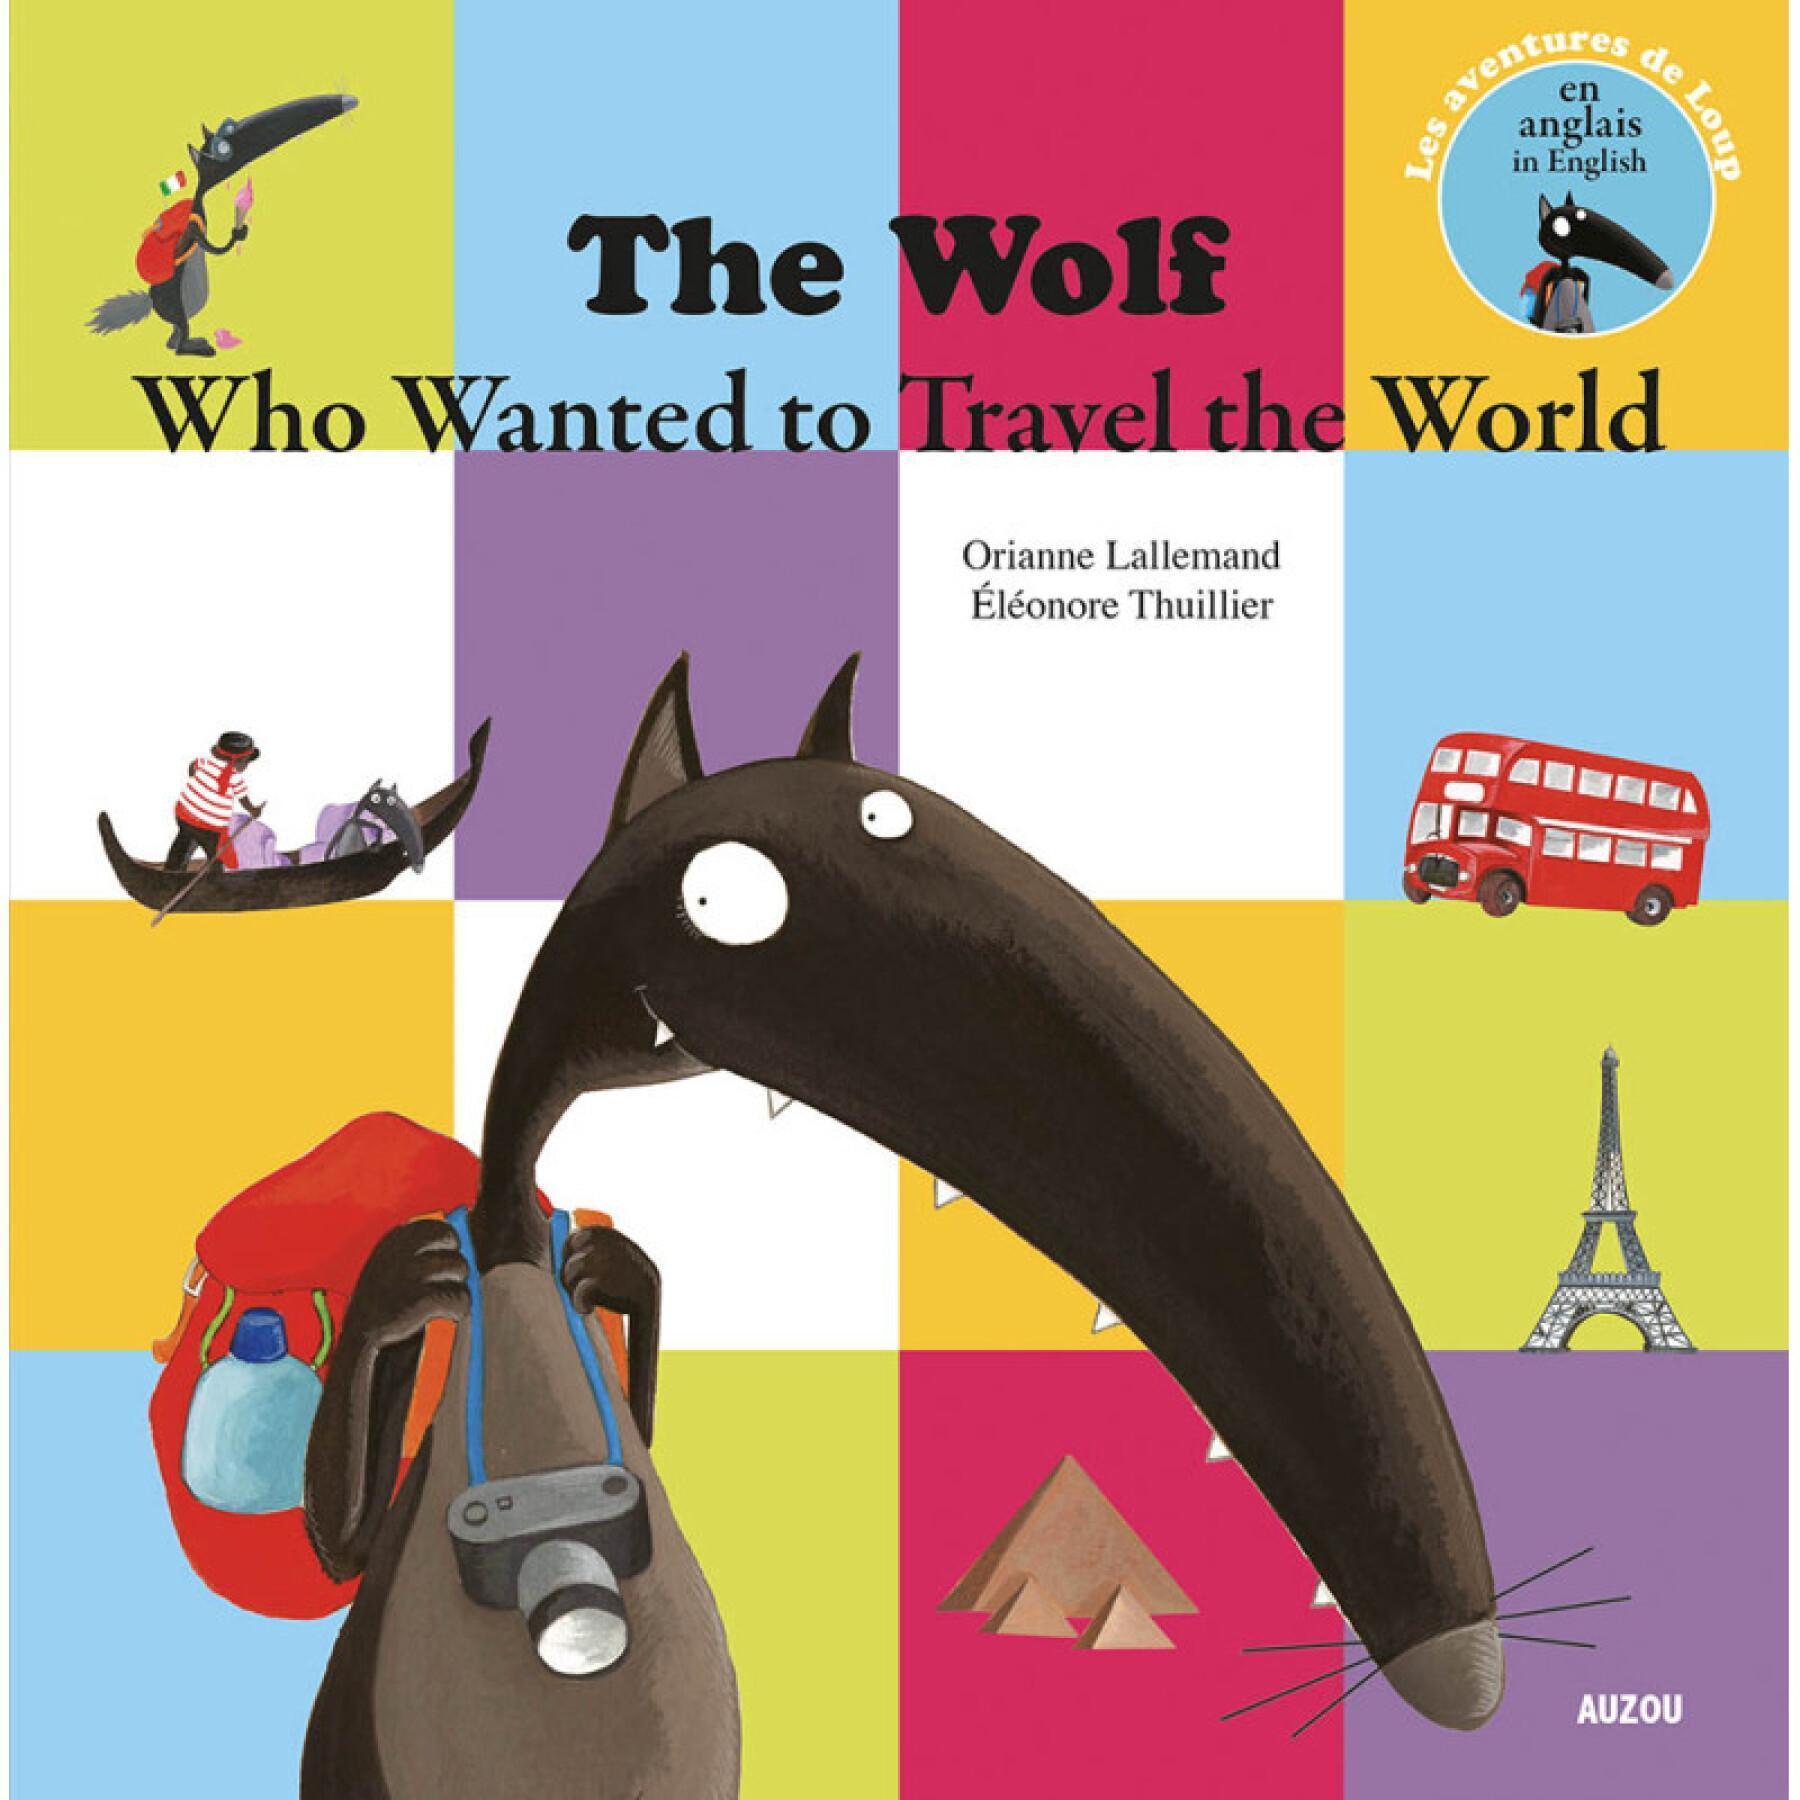 Libro para el lobo que quería dar la vuelta al mundo en inglés Auzou